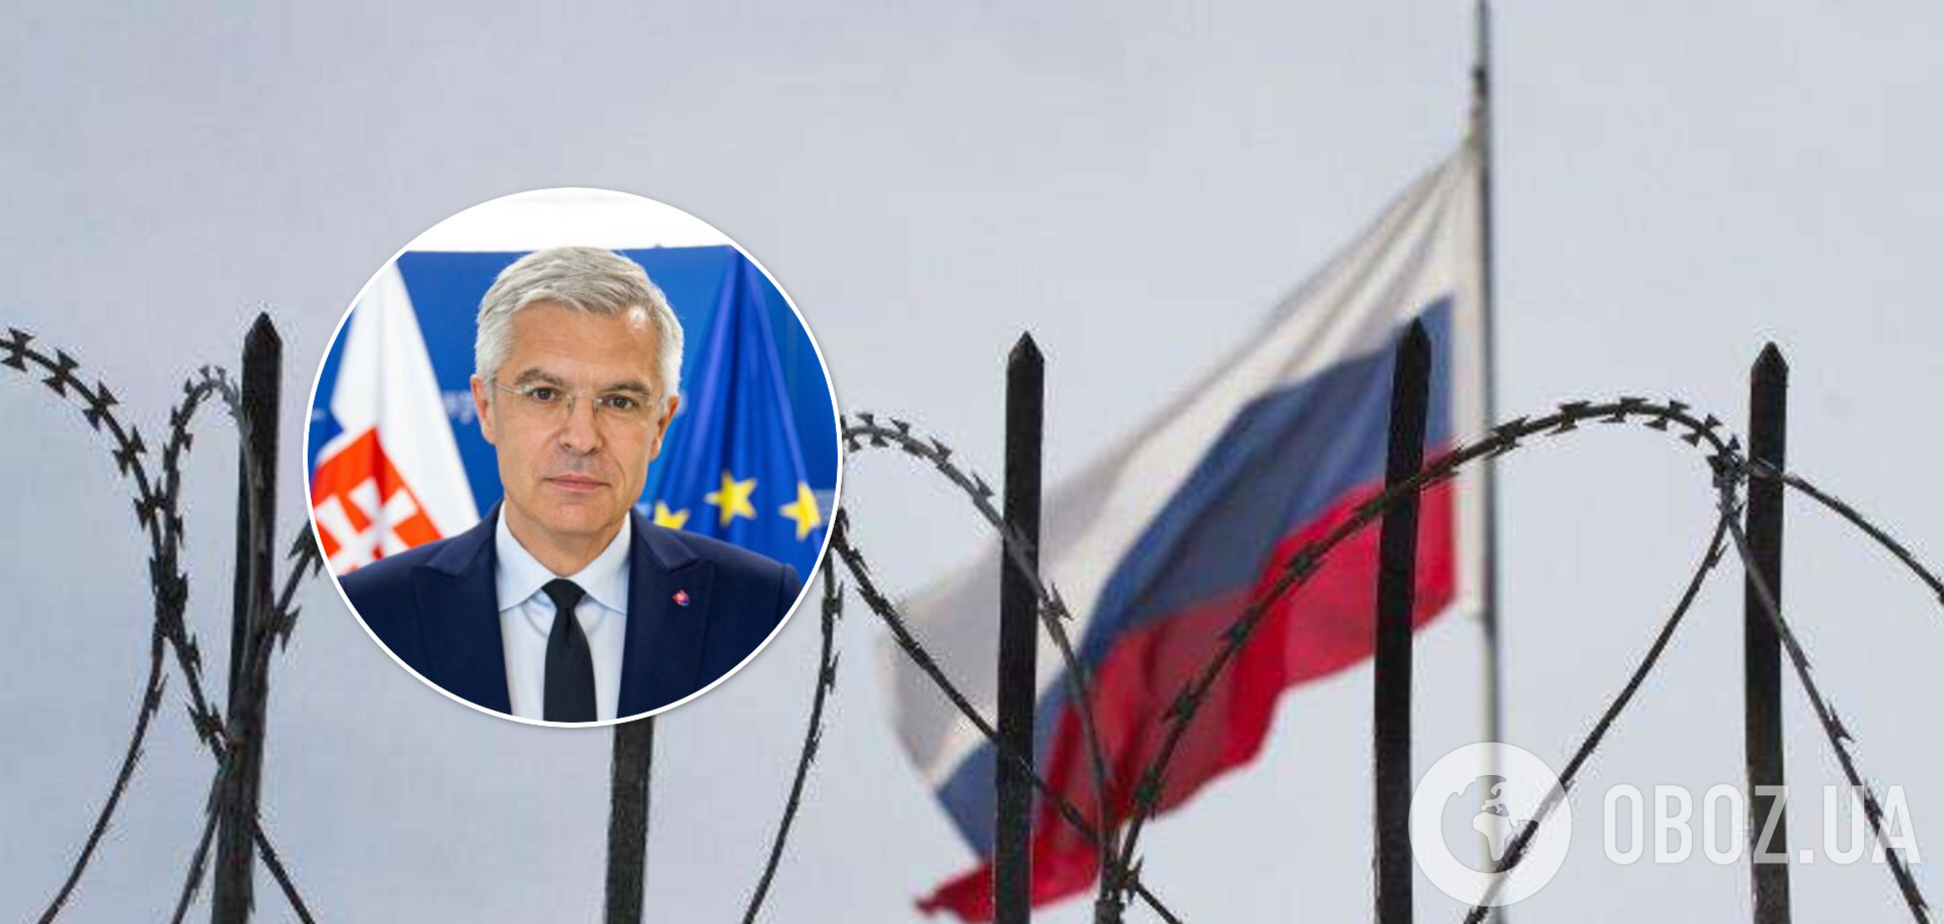 Словакия решила выслать 35 российских дипломатов из-за войны в Украине